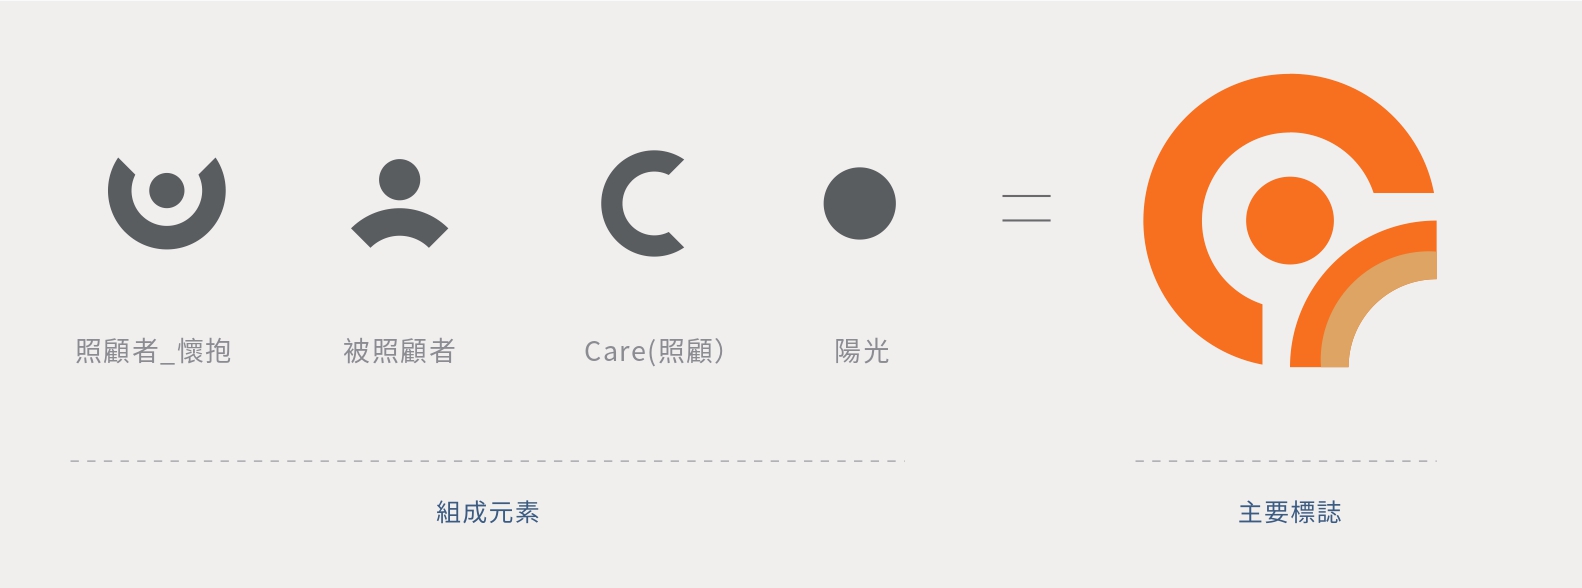 長照2.0標誌的組成元素包含：照顧者(懷抱)、被照顧者、Care(照顧)與陽光